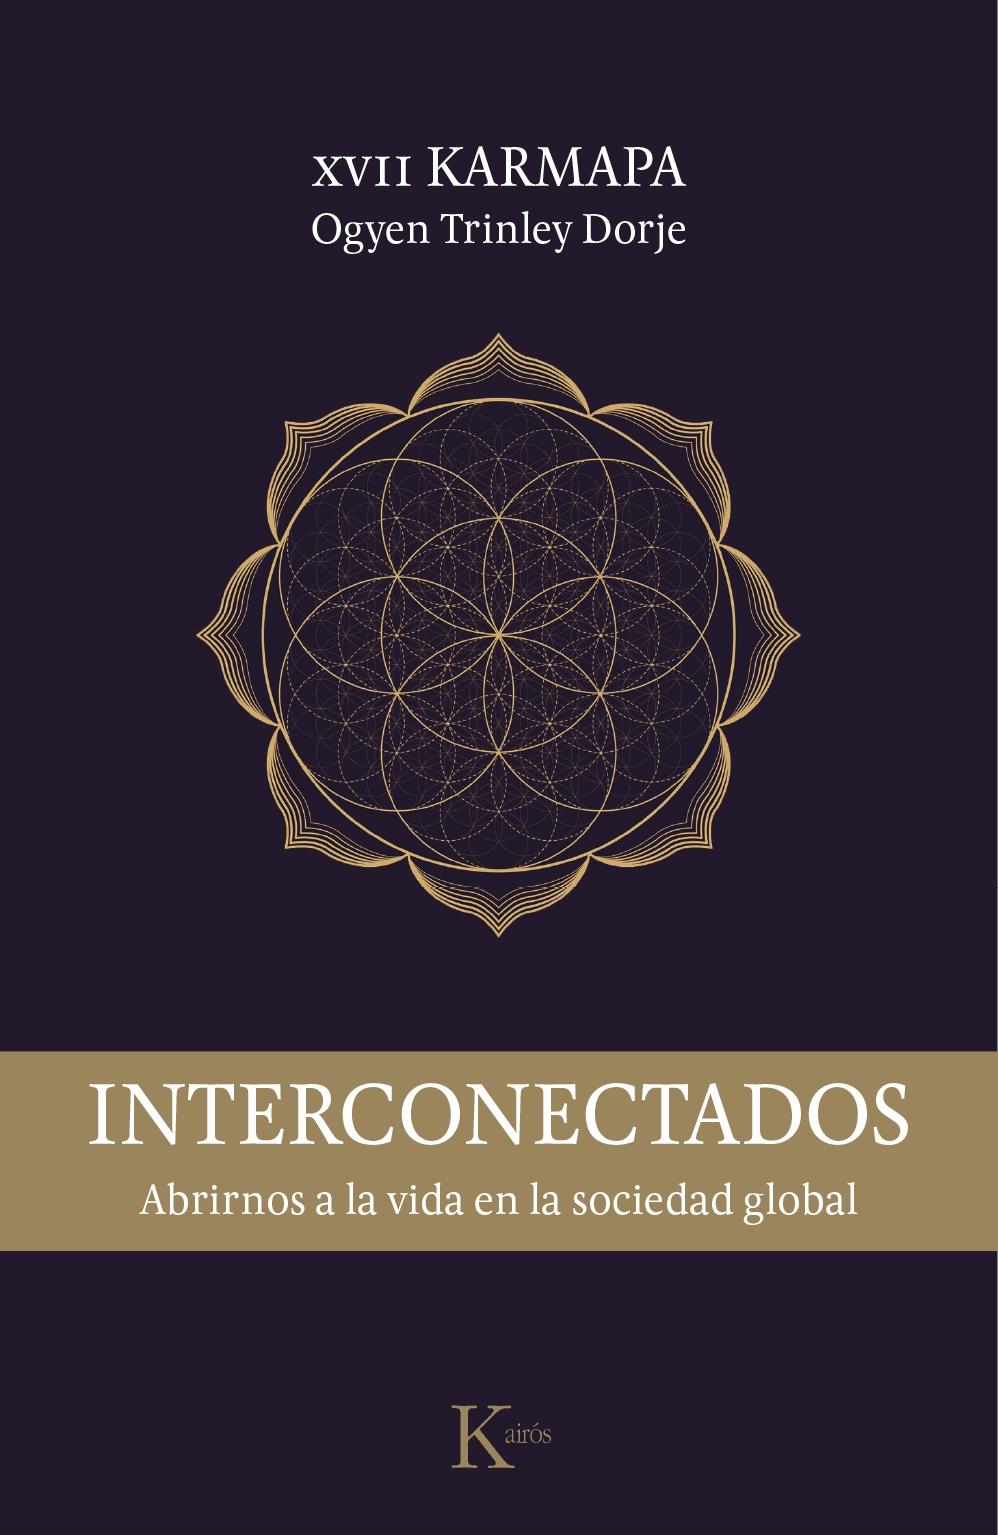 INTERCONECTADOS "ABRIRNOS A LA VIDA EN LA SOCIEDAD GLOBAL"